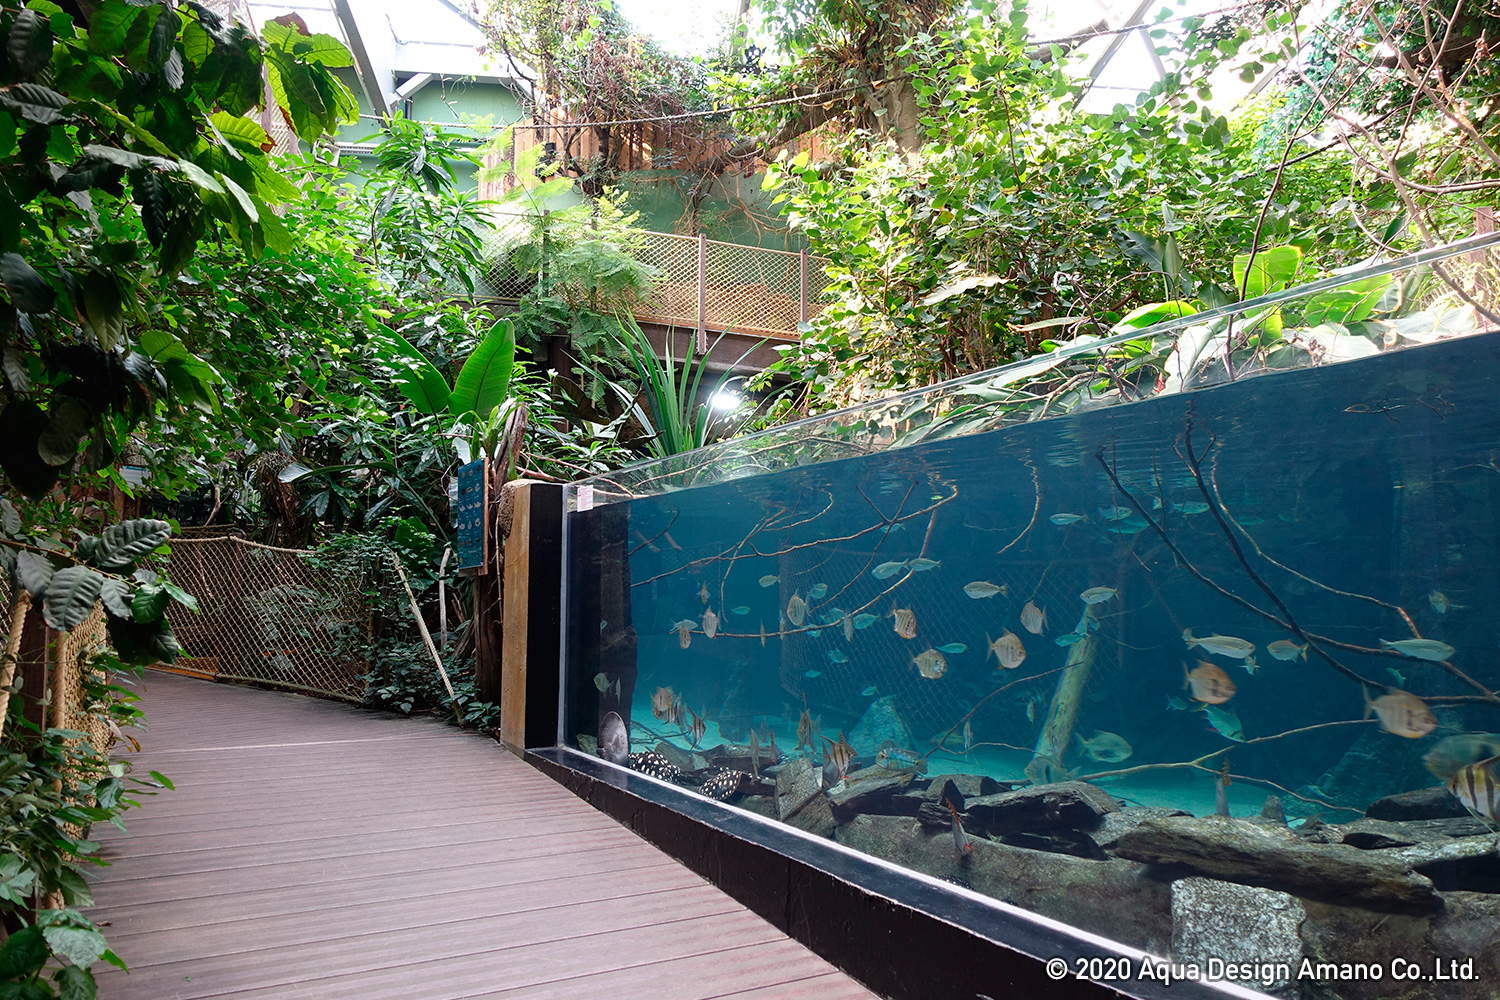 WORLD REPORT – Aquatis, the largest freshwater aquarium in Europe